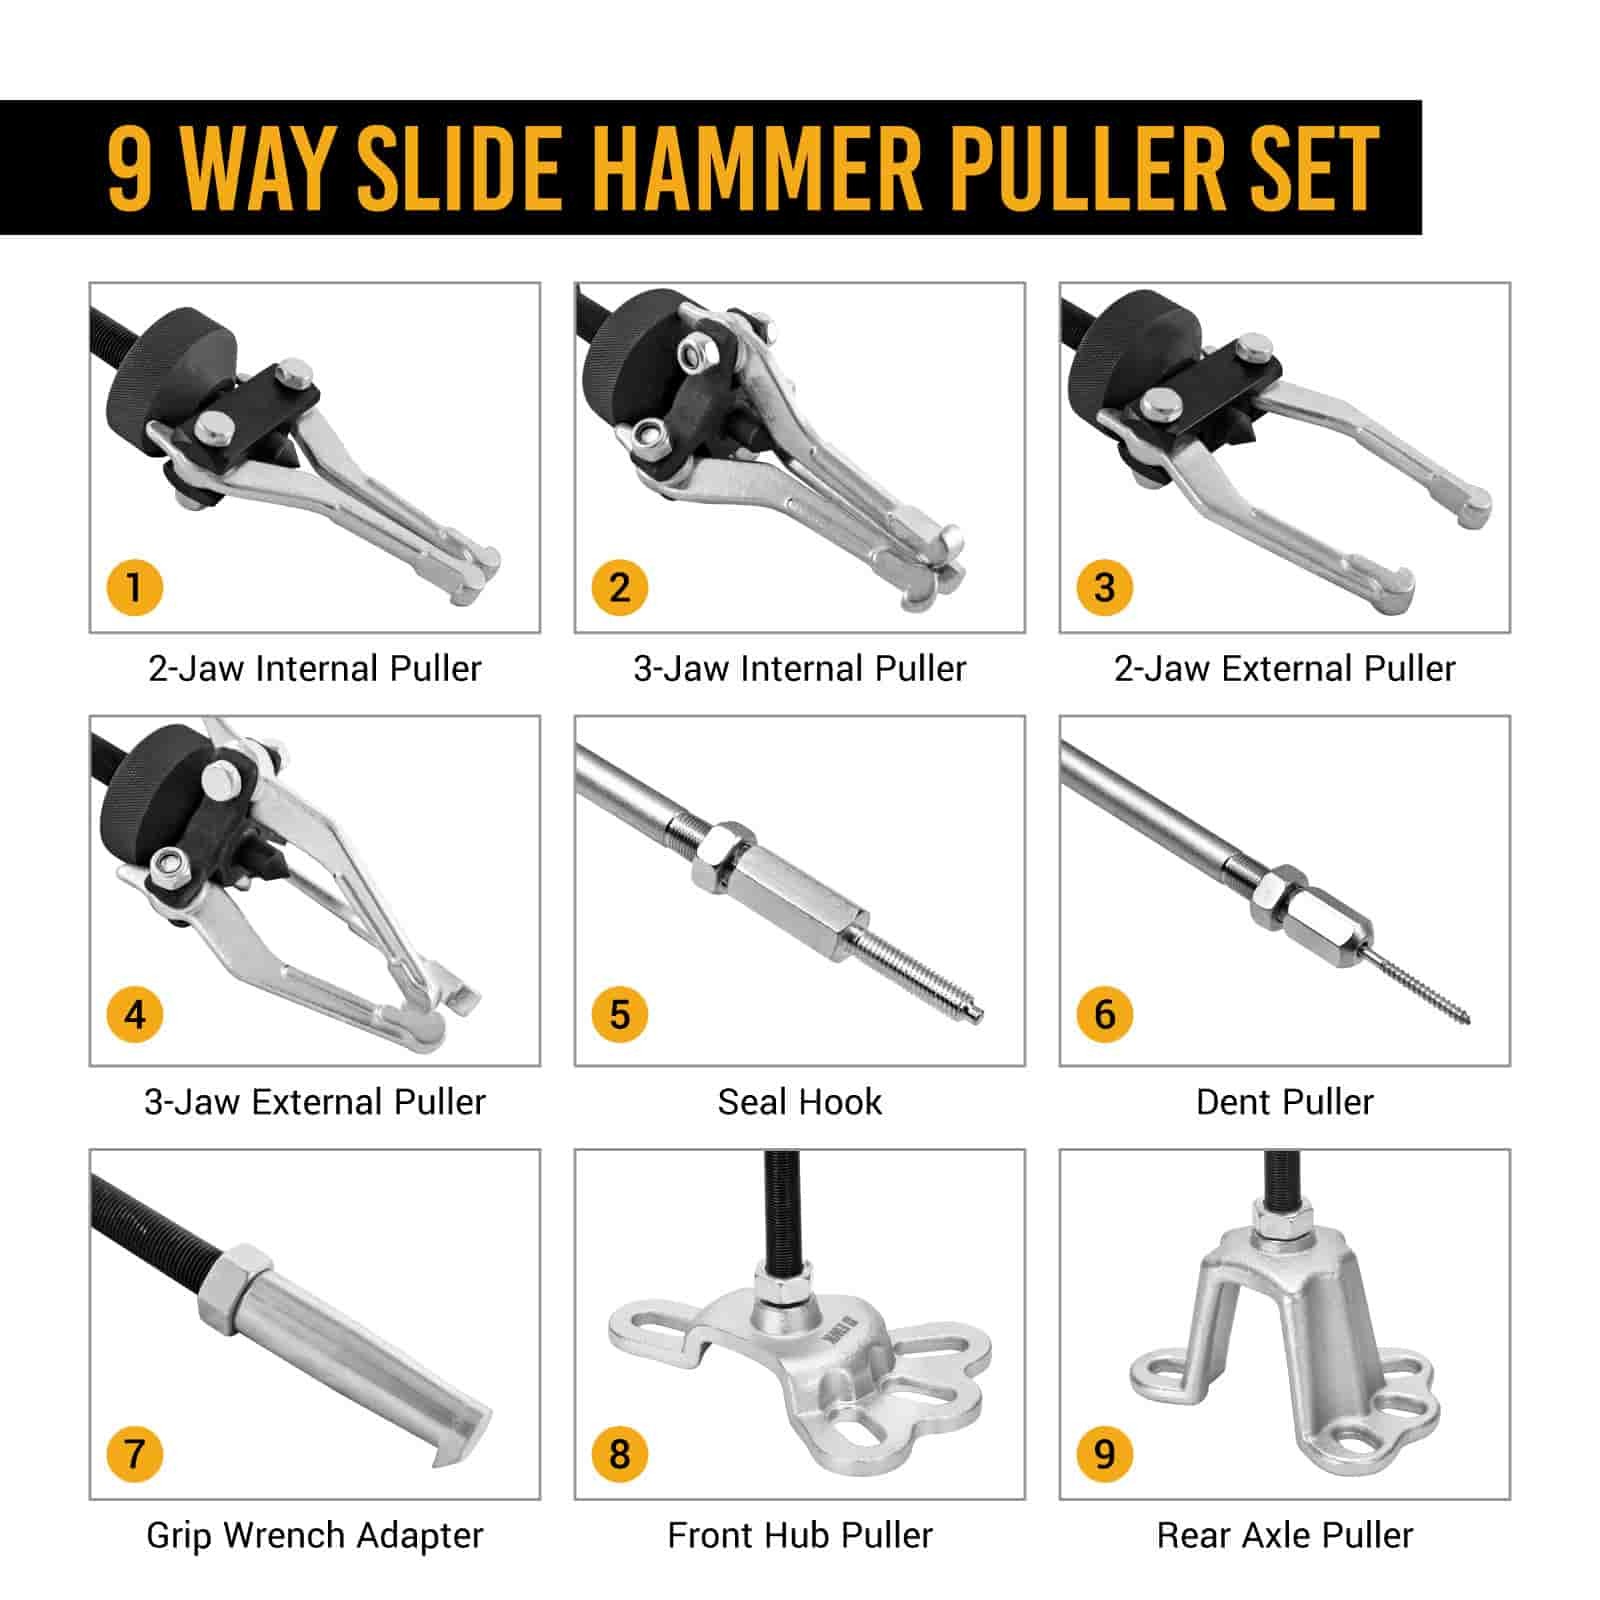 9 Way 5 lb. Slide Hammer and Puller Set